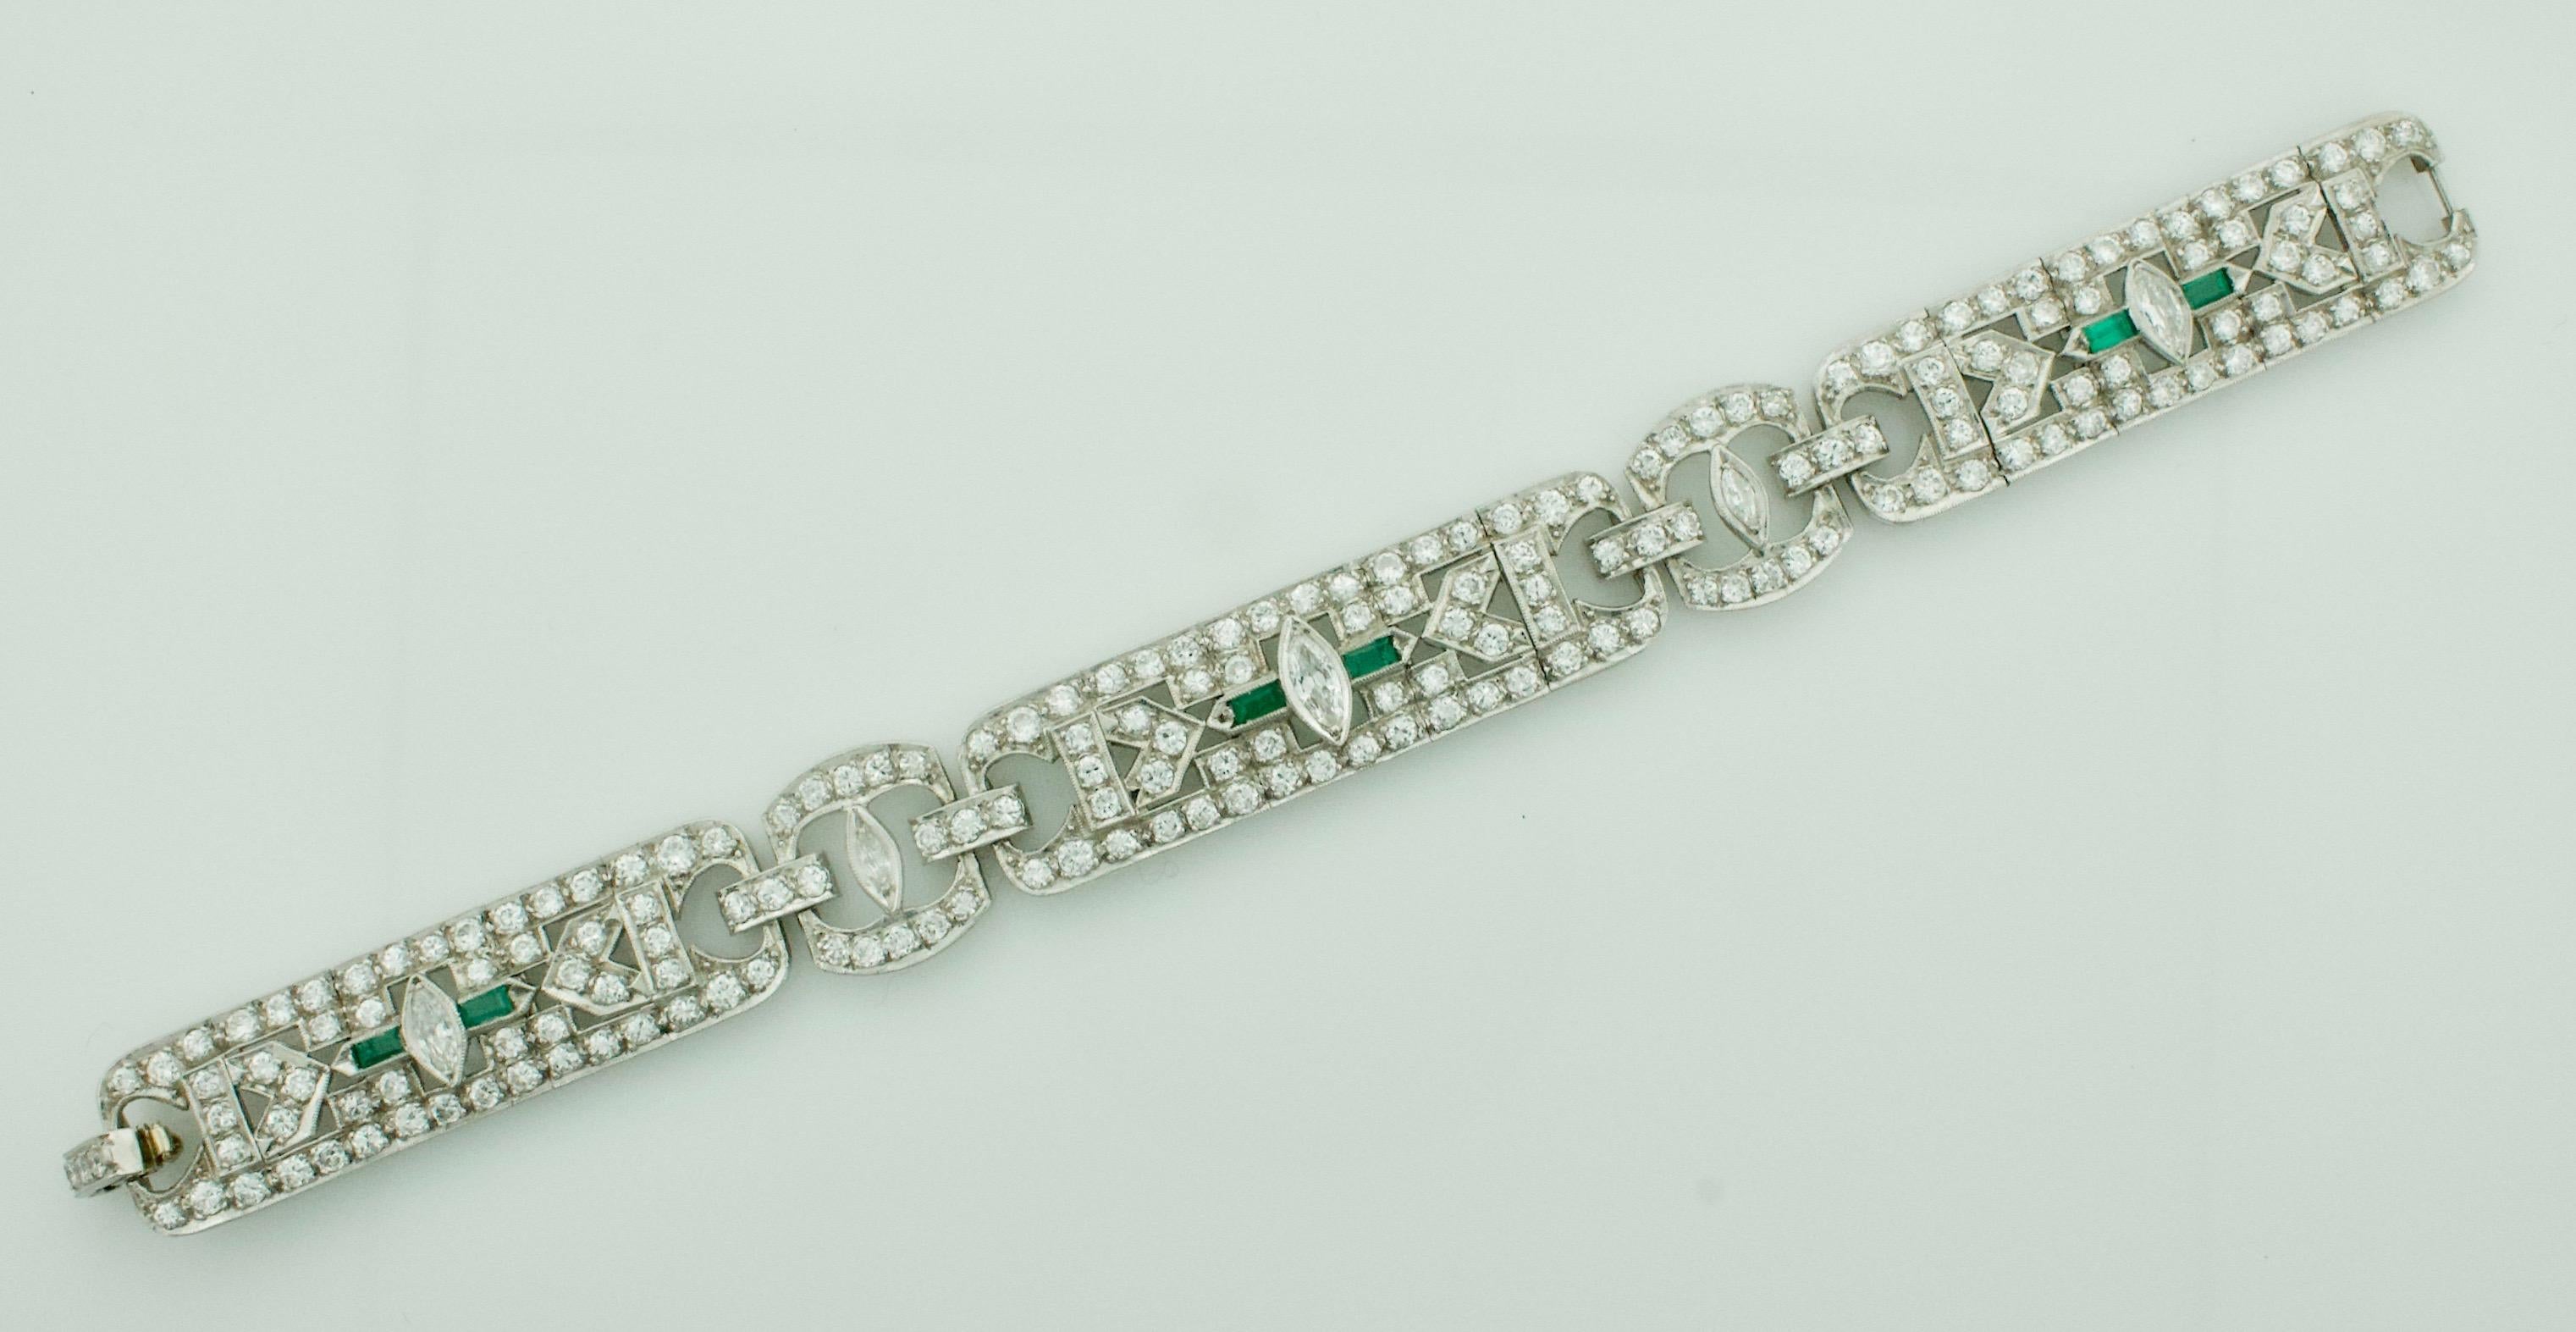 Art Deco Diamant- und Smaragd-Armband aus Platin um 1930er Jahre
Drei Diamanten im Marquise-Schliff mit einem Gewicht von ca. 0,70 Karat 
Zwei Diamanten im Marquise-Schliff mit einem Gewicht von ca. 0,15 Karat 
Zweihundertvierundsiebzig